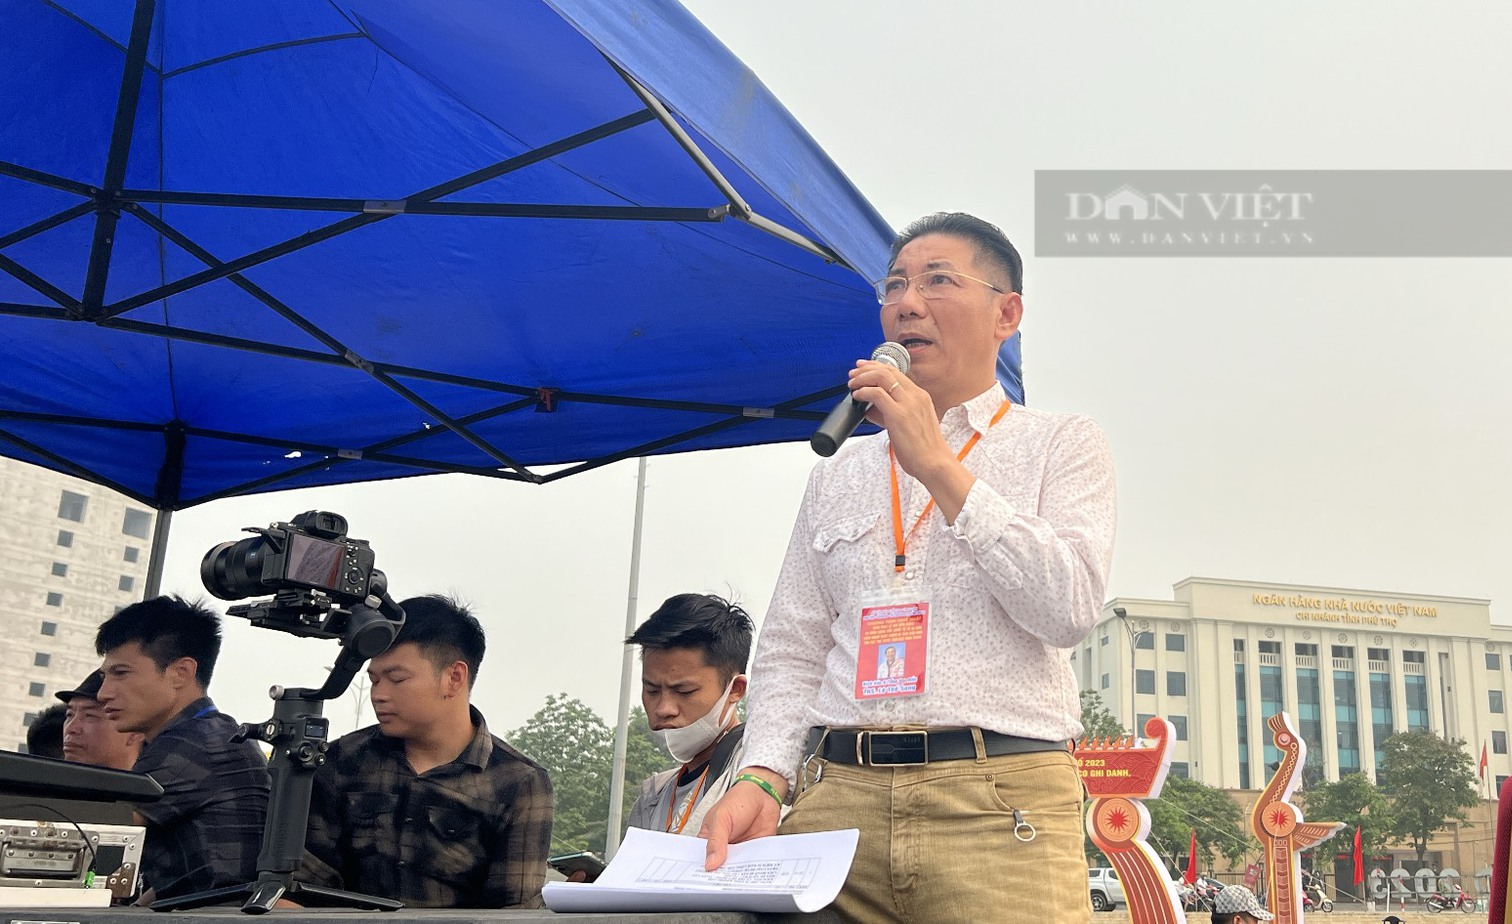 Chương trình khai mạc Lễ hội Đền Hùng thay đổi vào phút cuối, Tổng đạo diễn Lê Thế Song kể chuyện hậu trường - Ảnh 5.